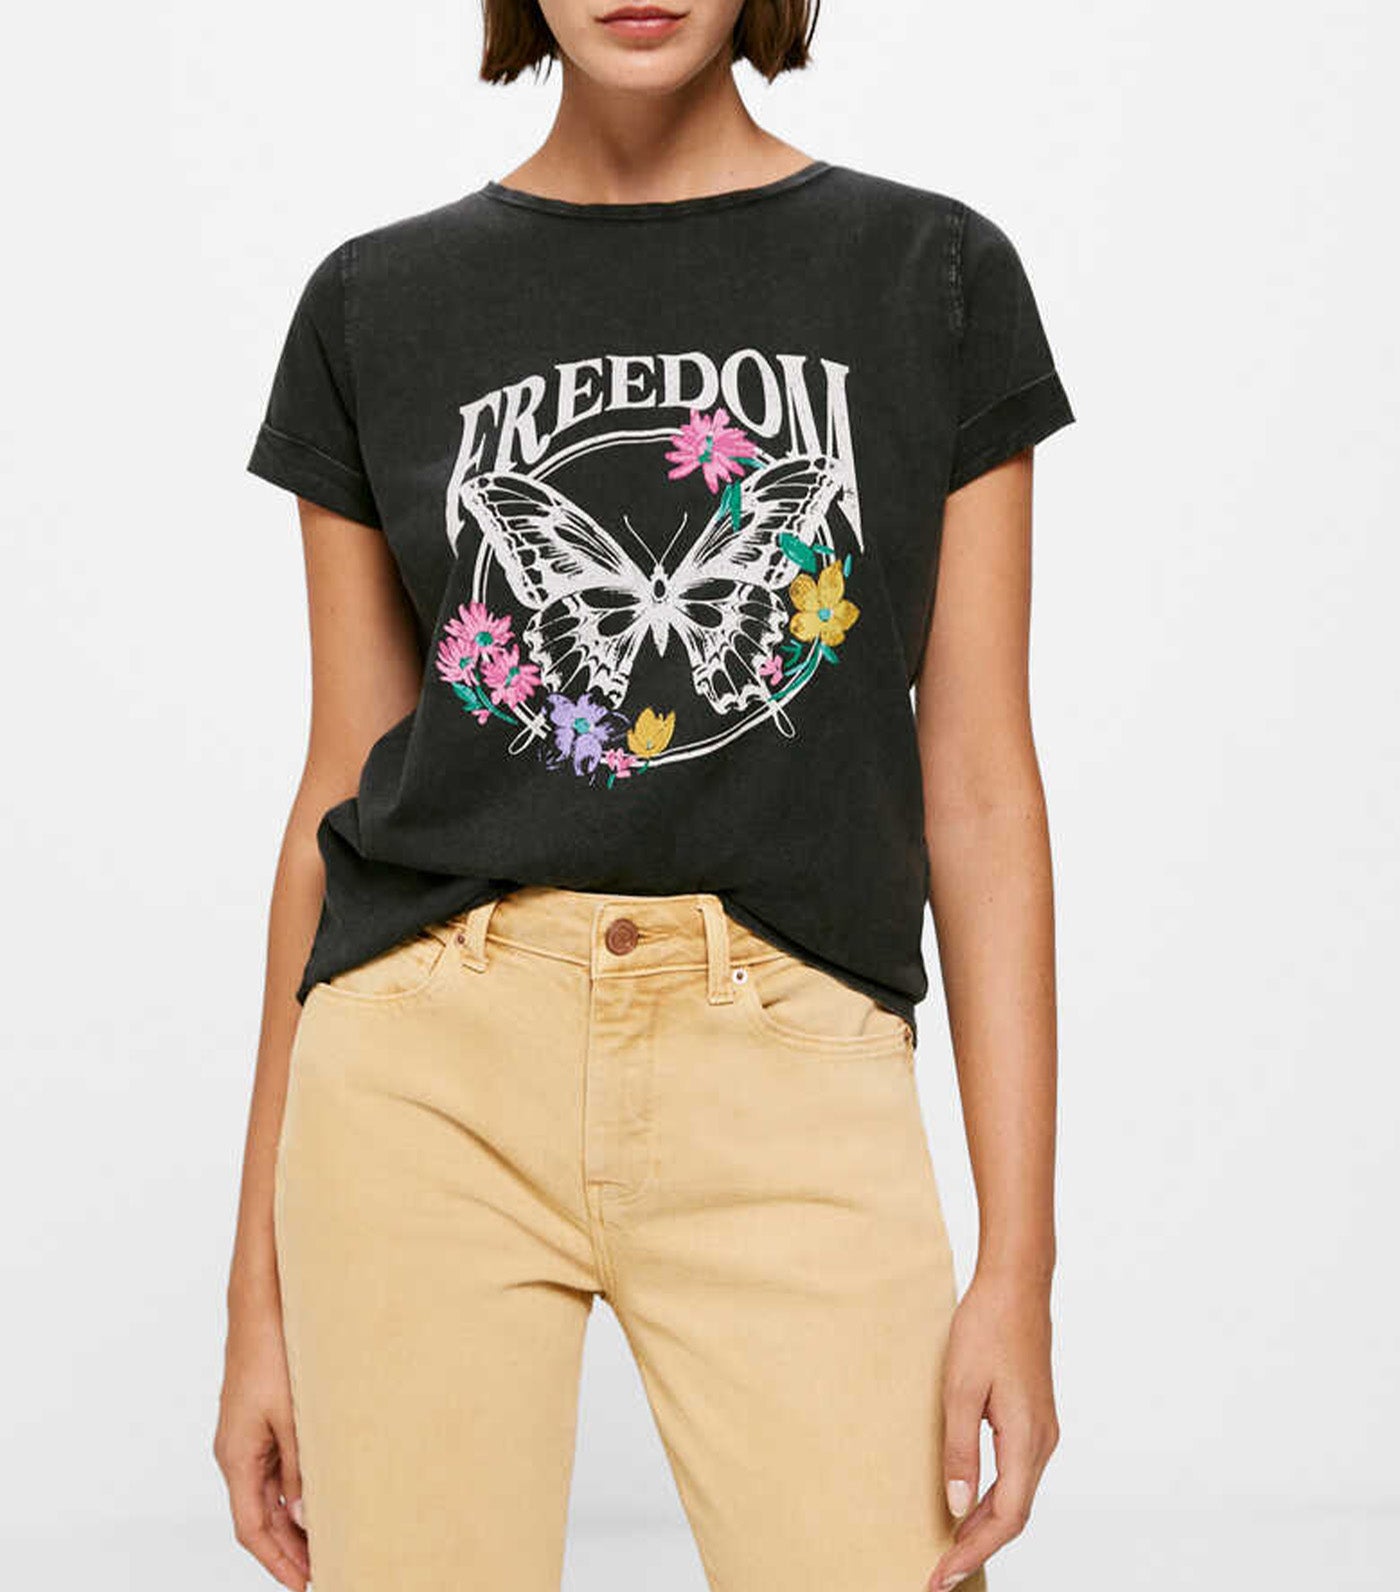 Freedom T-Shirt Black